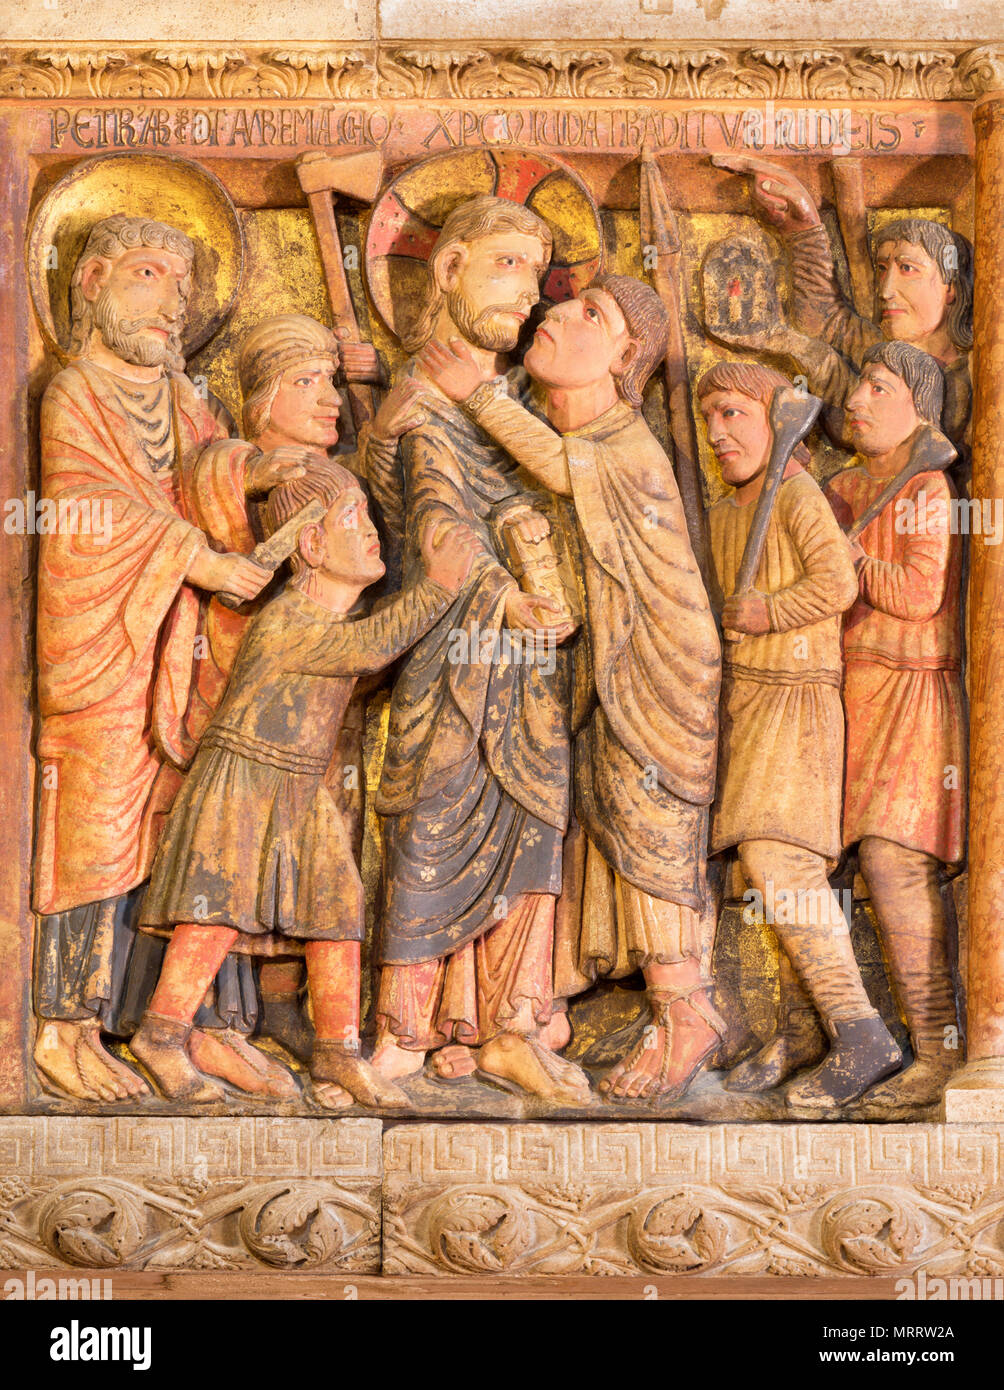 MODENA, ITALIE - 14 avril 2018 : Le relief de Batray de Jésus à Gethsémané jardin à Duomo par Anselmo da Campione (1165-1225). Banque D'Images